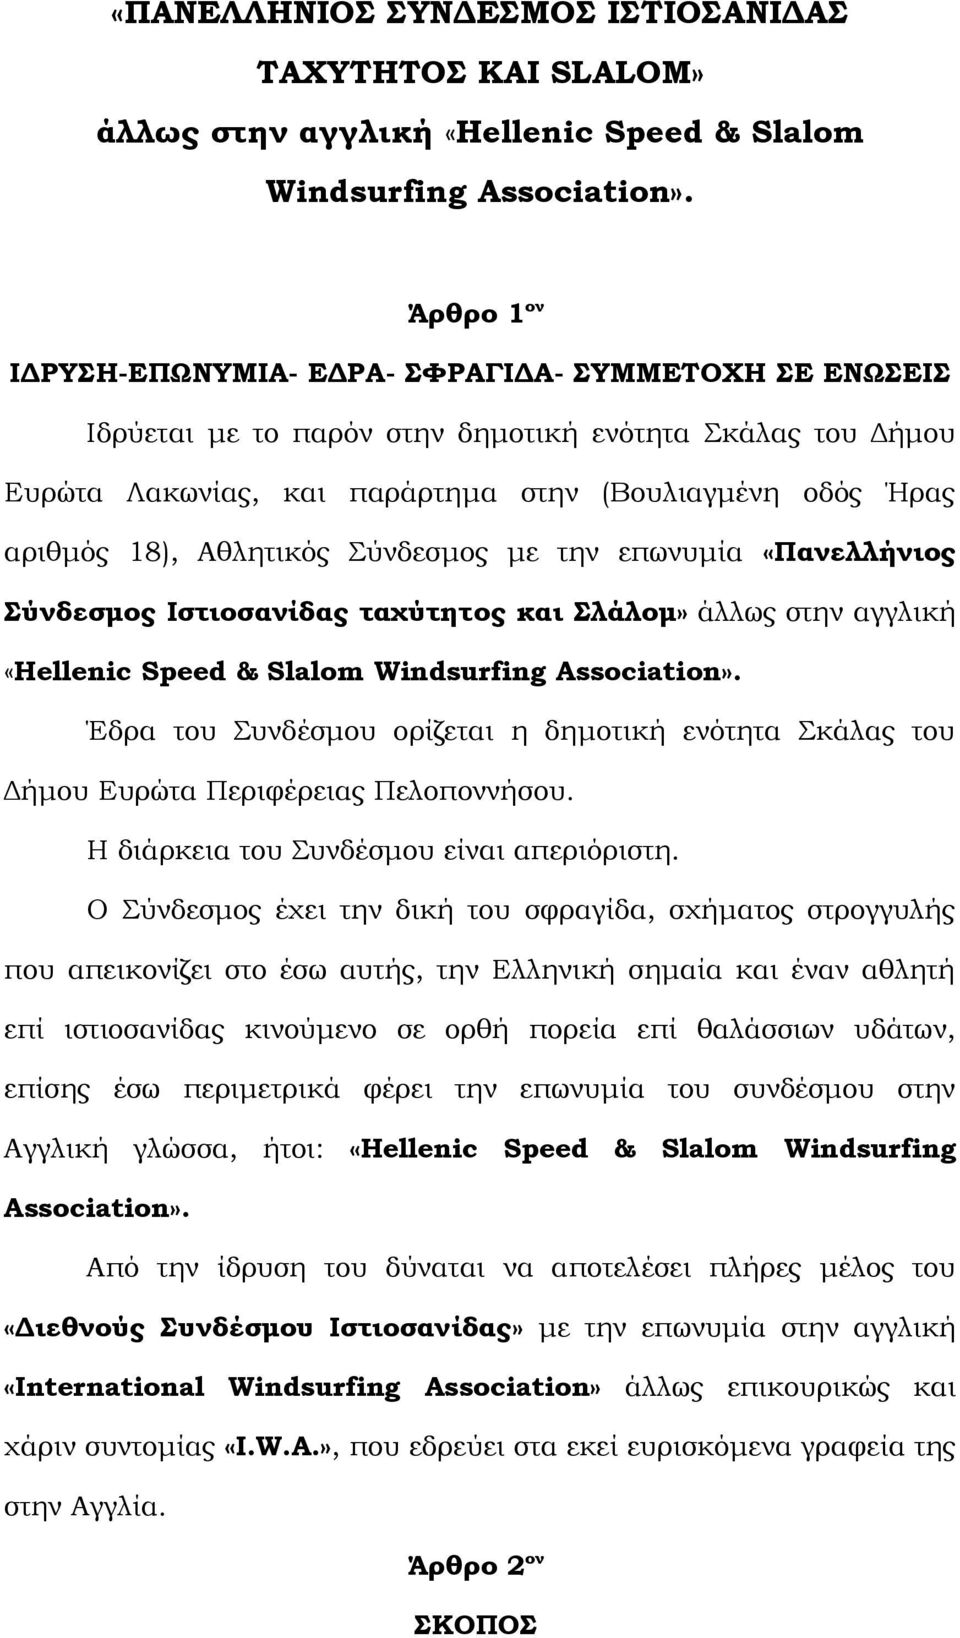 Αθλητικός Σύνδεσμος με την επωνυμία «Πανελλήνιος Σύνδεσμος Ιστιοσανίδας ταχύτητoς και Σλάλομ» άλλως στην αγγλική «Hellenic Speed & Slalom Windsurfing Association».